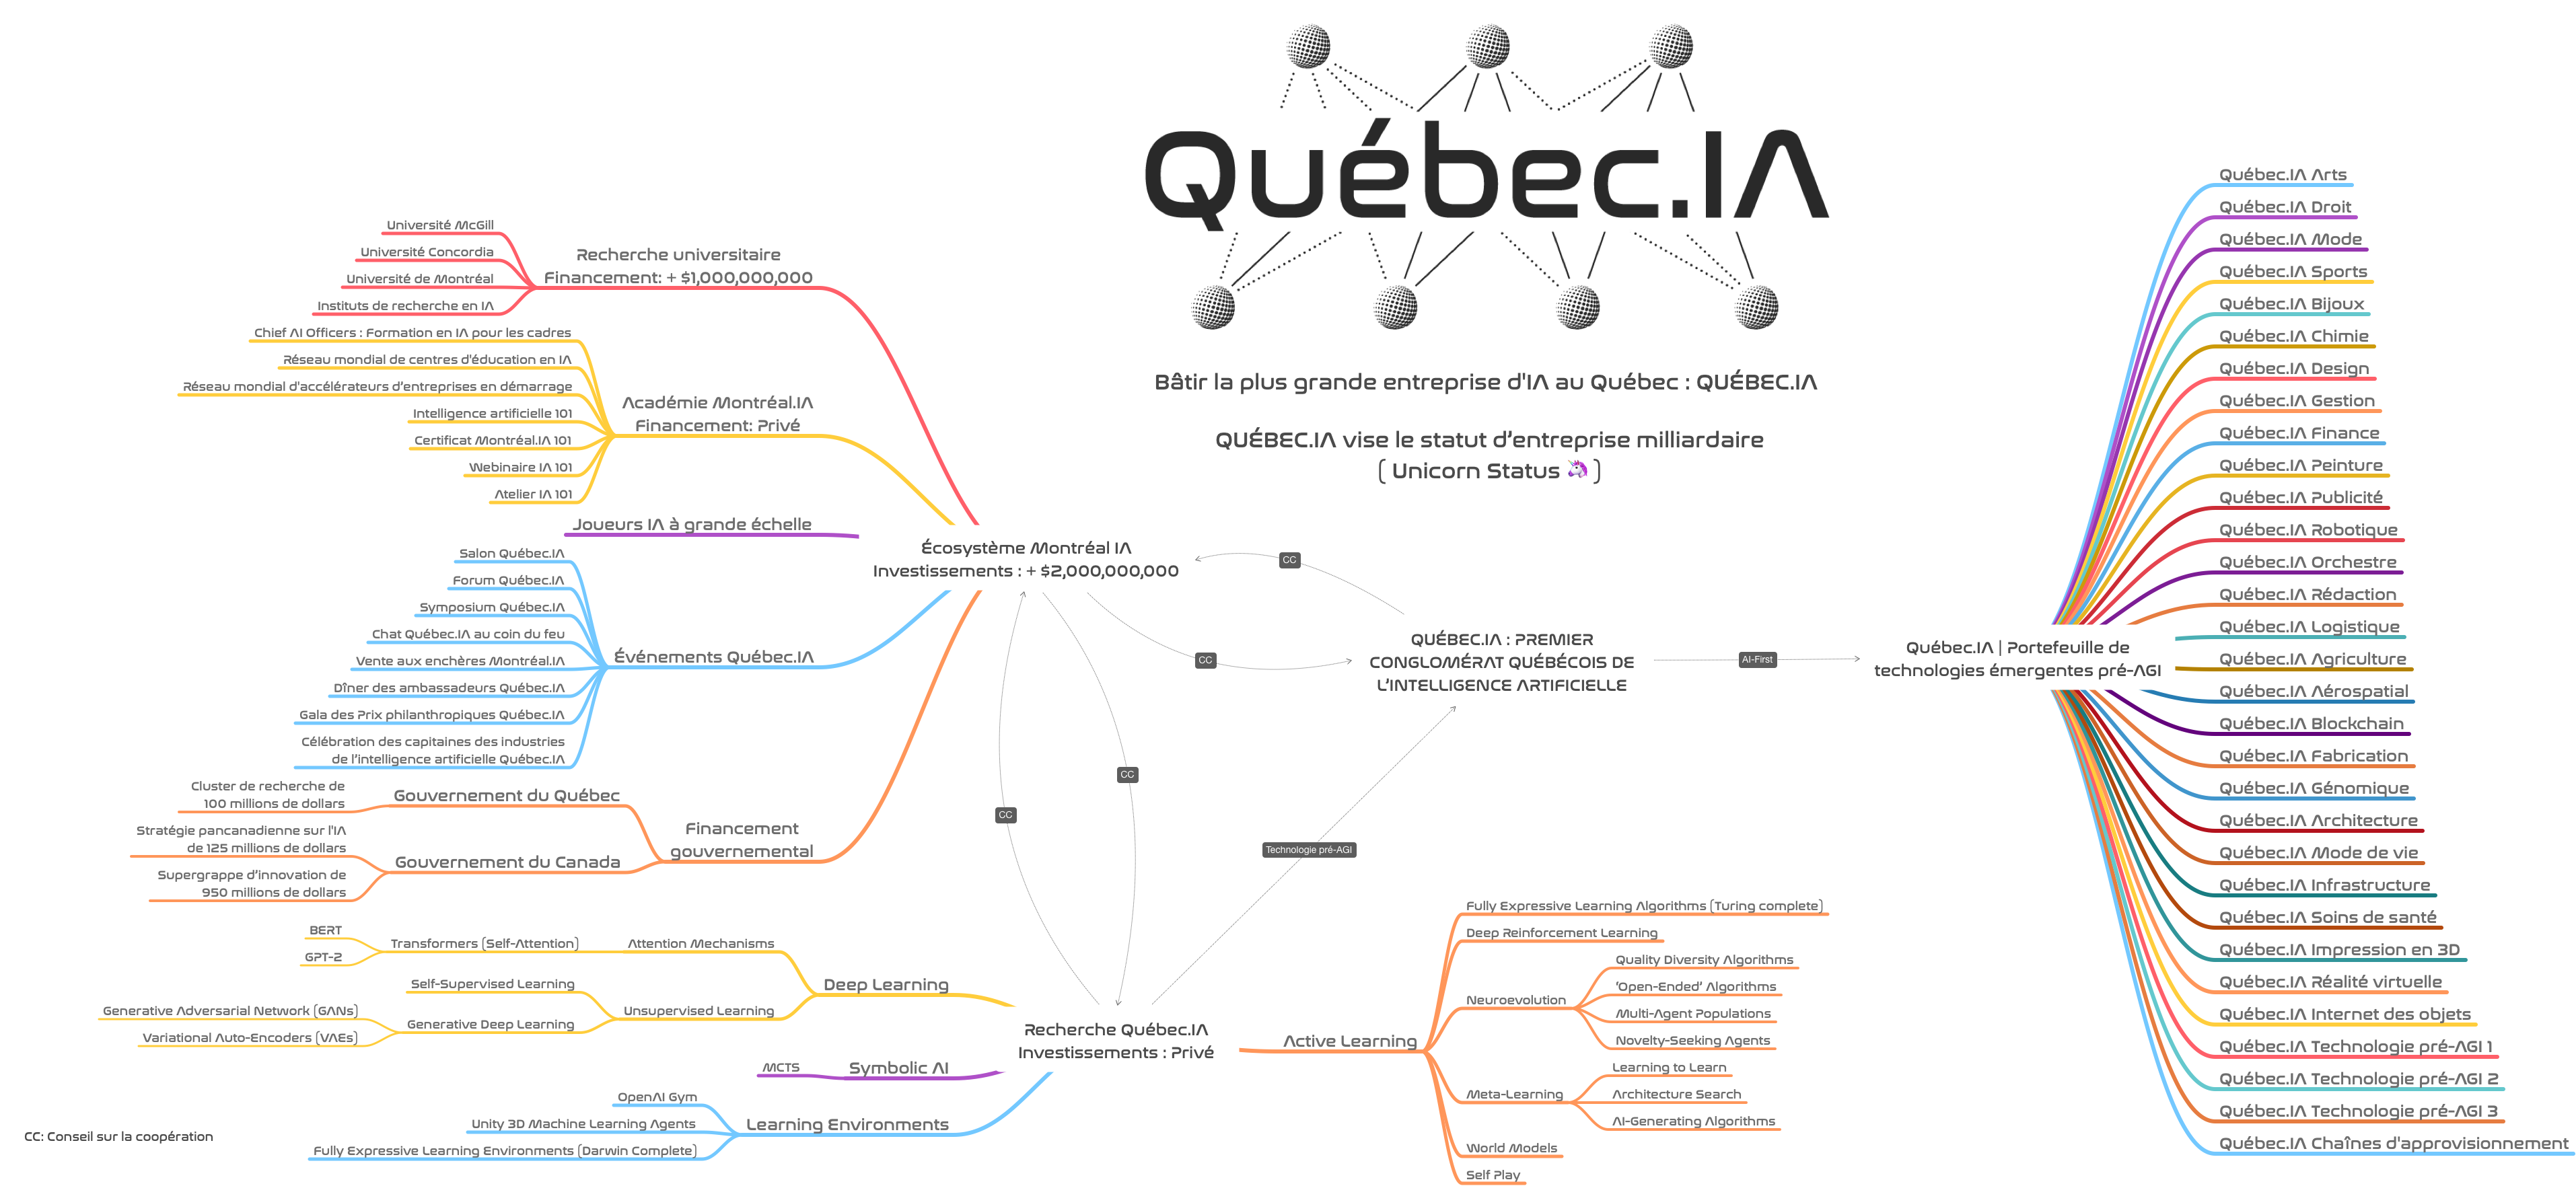 Le programme général de déploiement de l'intelligence artificielle du premier conglomérat de l'IA au Québec